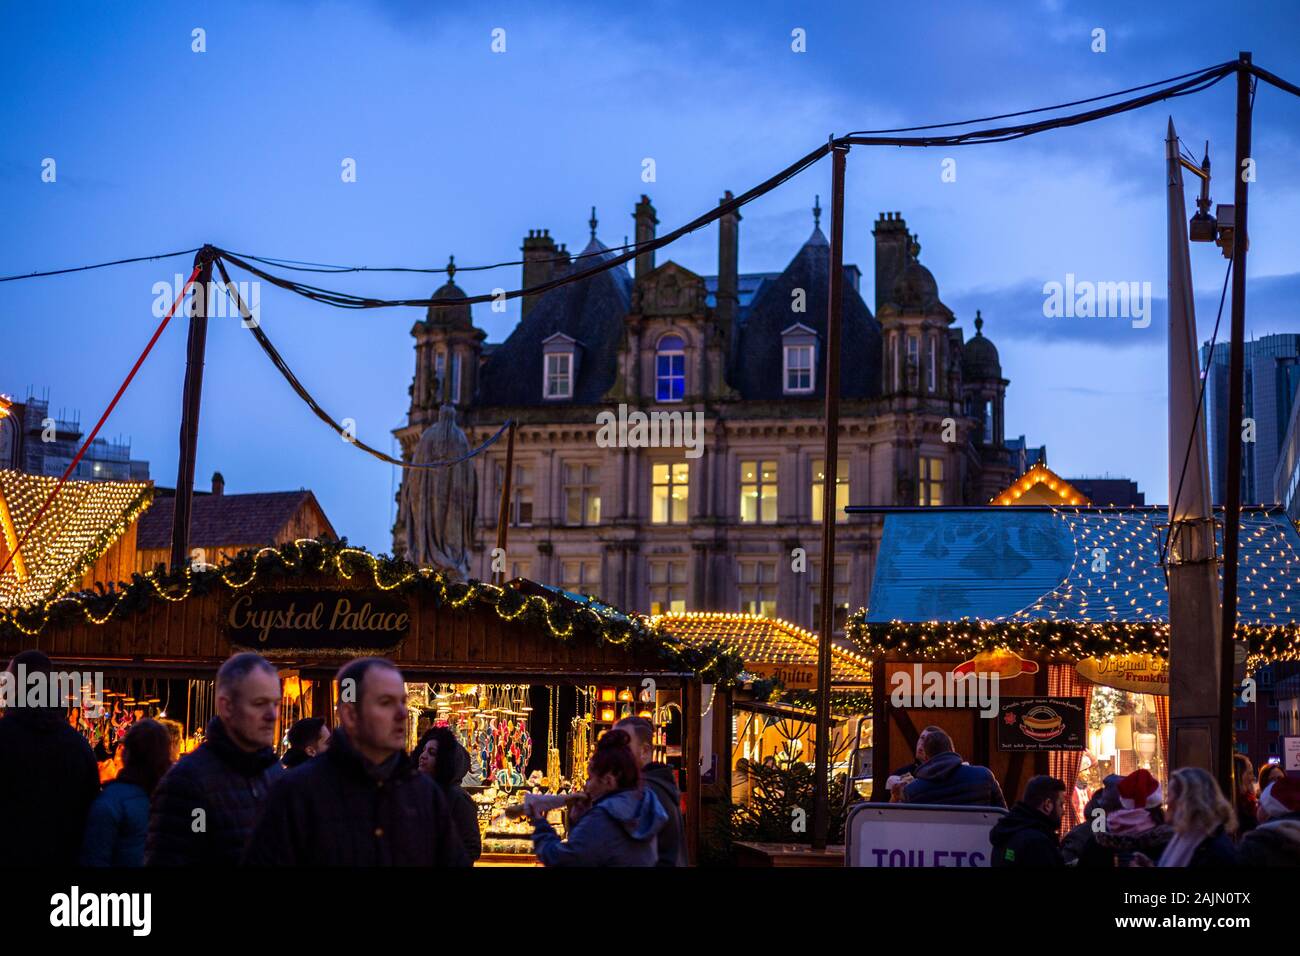 BIRMINGHAM, VEREINIGTES KÖNIGREICH - Dezember 15, 2019: Handel Marktstand Lichter am Victoria Square während der jährlichen Weihnachten Fraknkfurt Markt Stockfoto